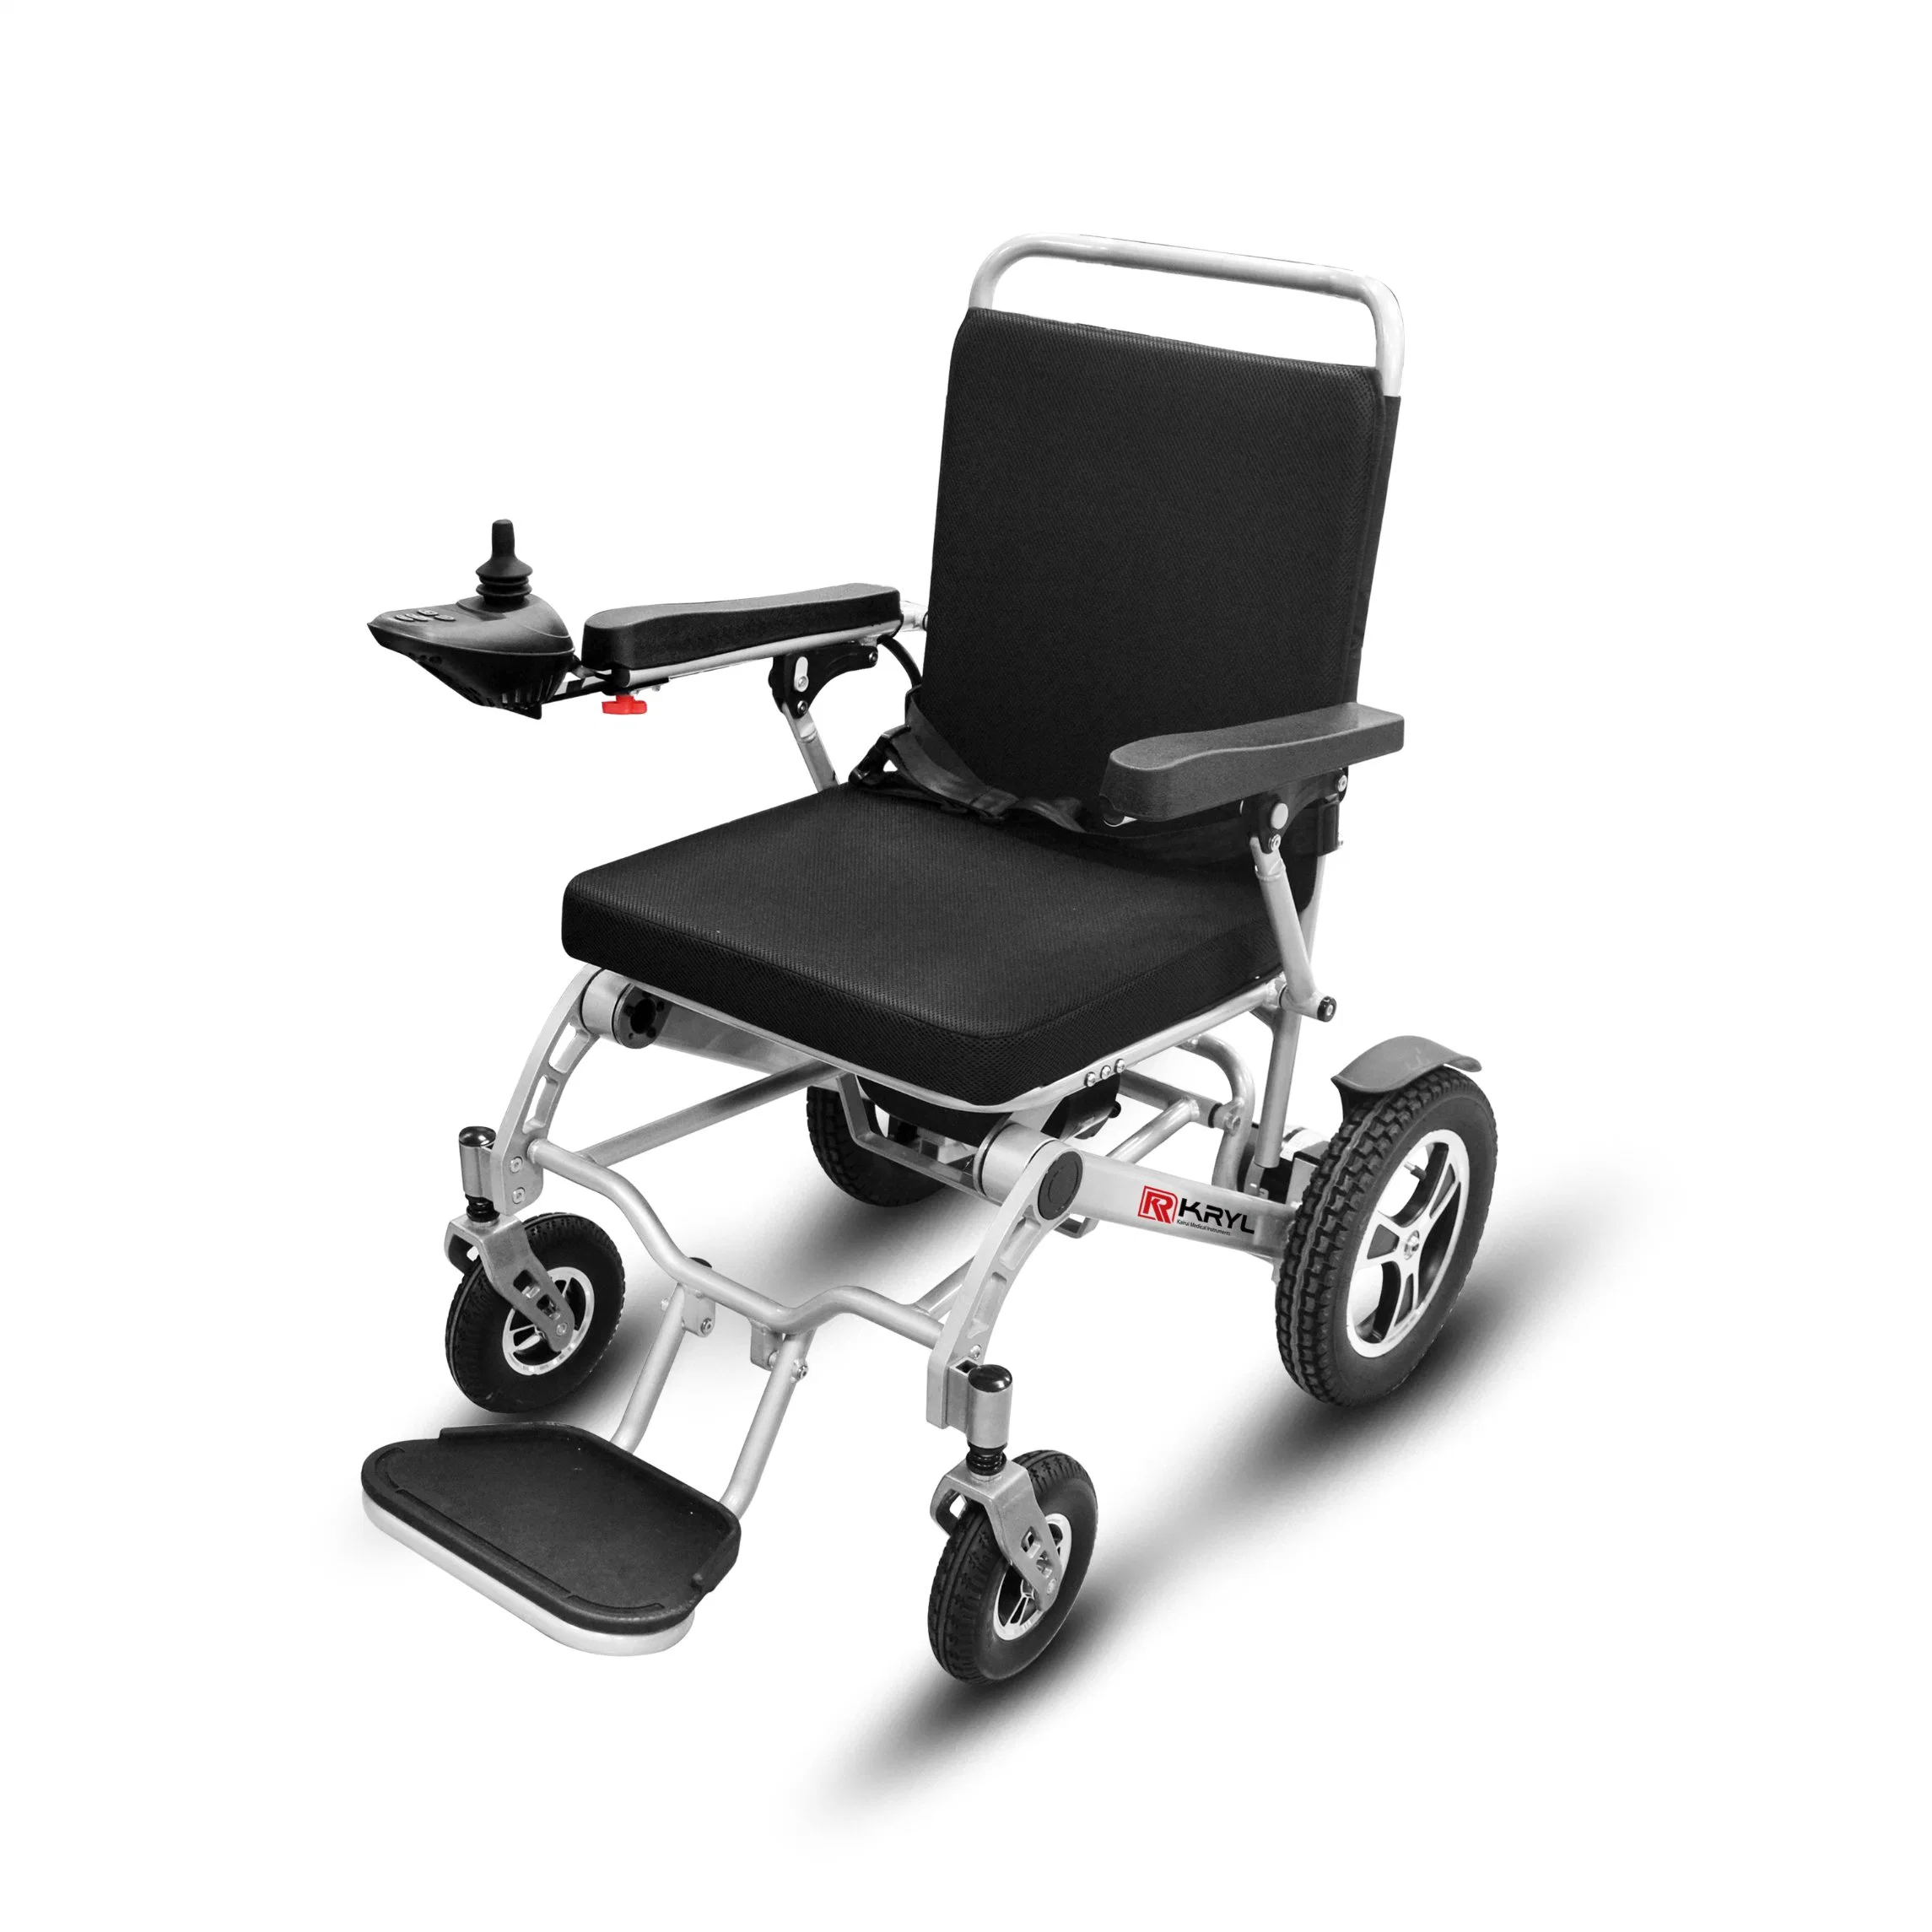 Telemando de energía eléctrica portátil silla de ruedas Scooter discapacitados discapacidad plegado fácil productos para personas con discapacidad y el Elder